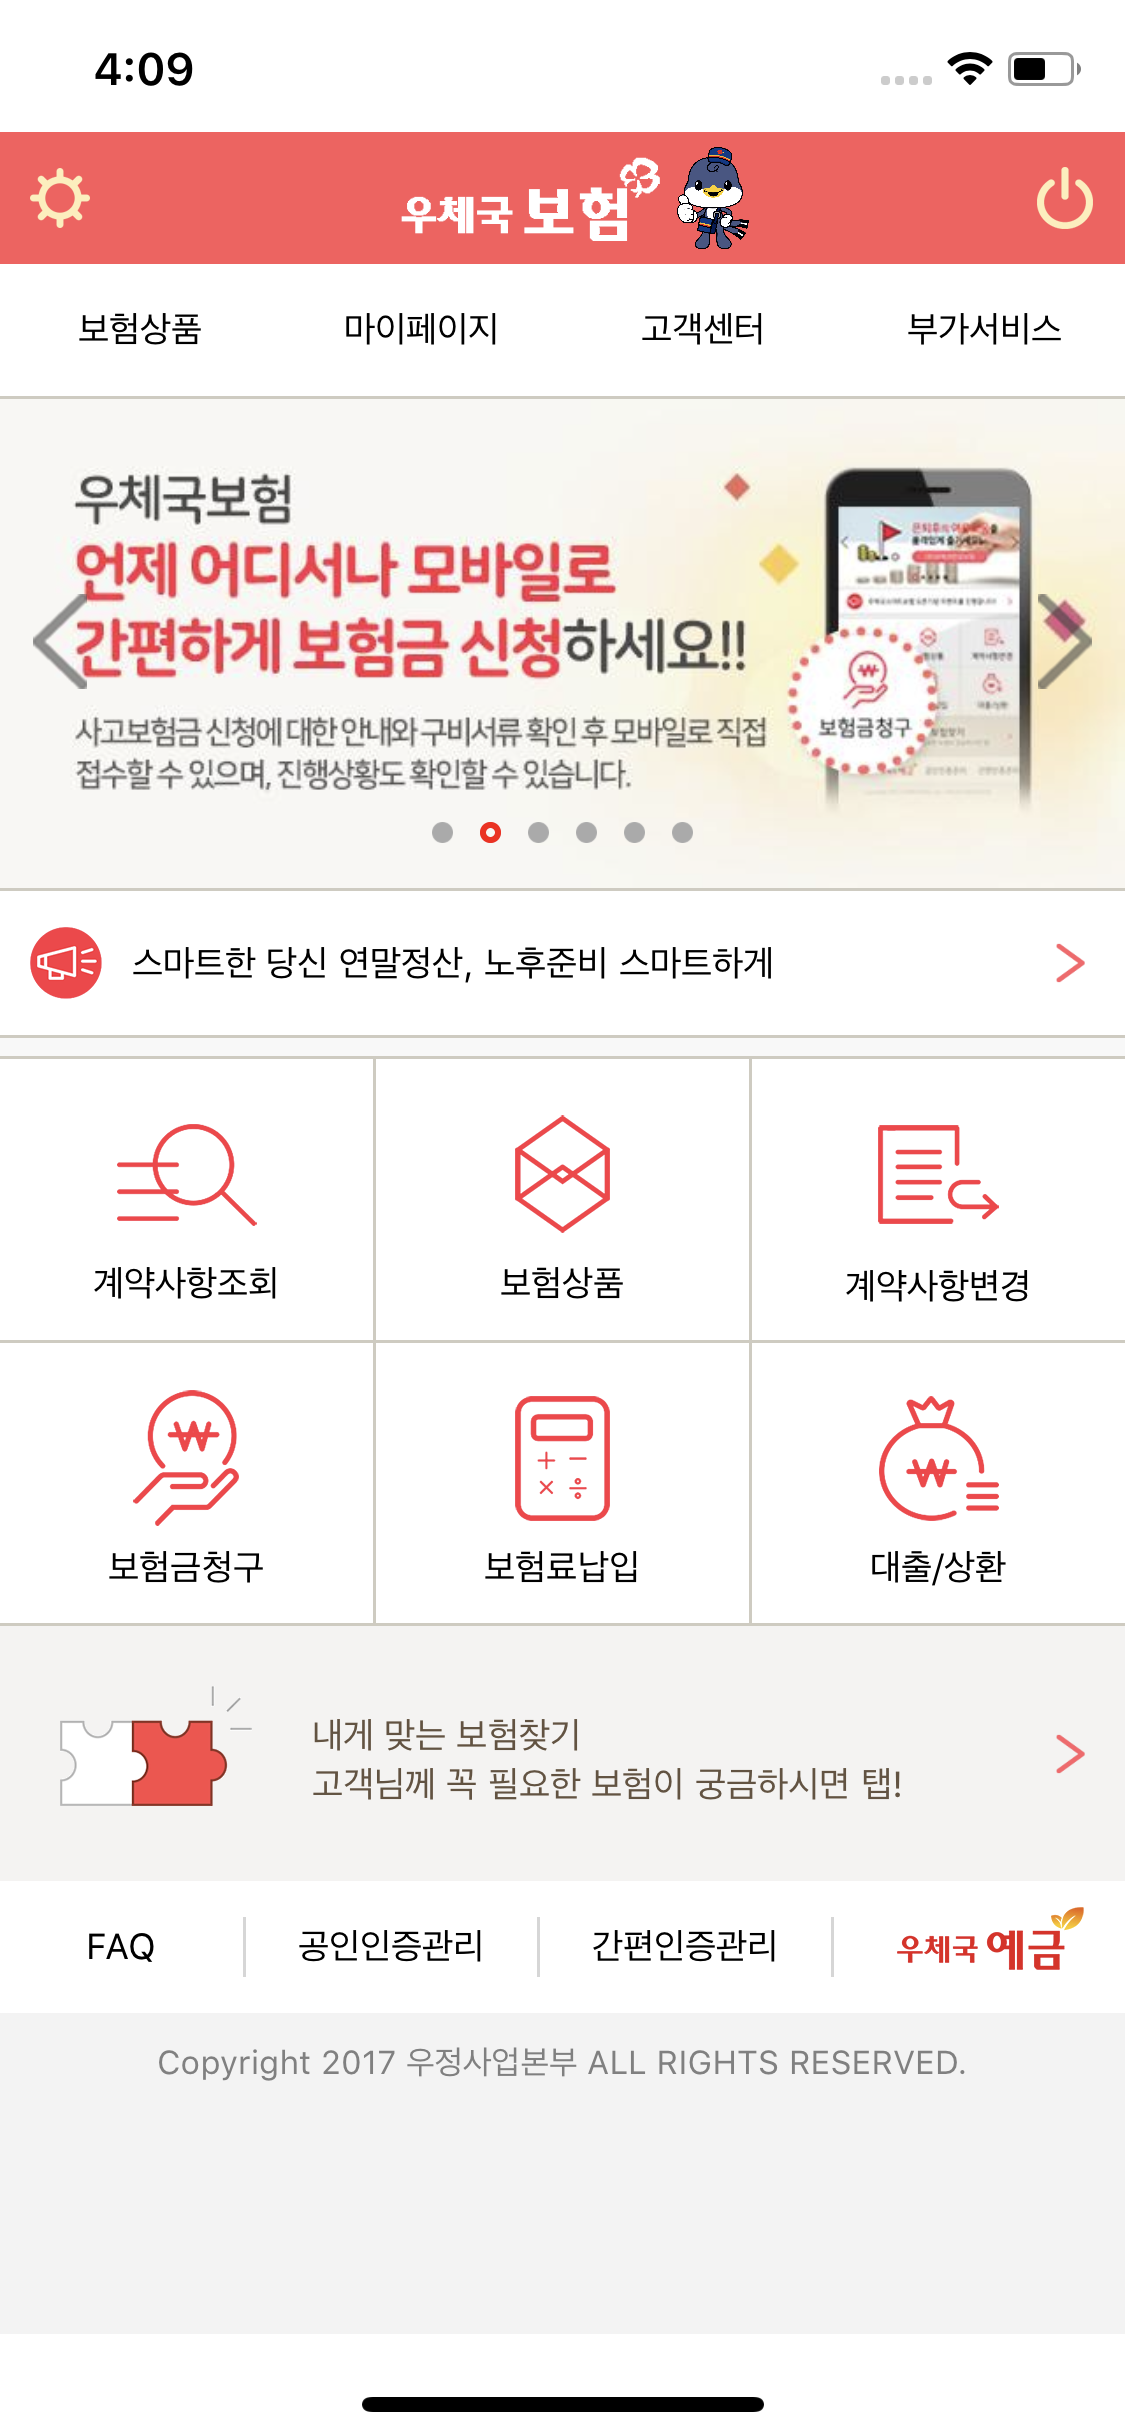 우체국 보험 앱 (iOS) ver 1.1 스크릿샷